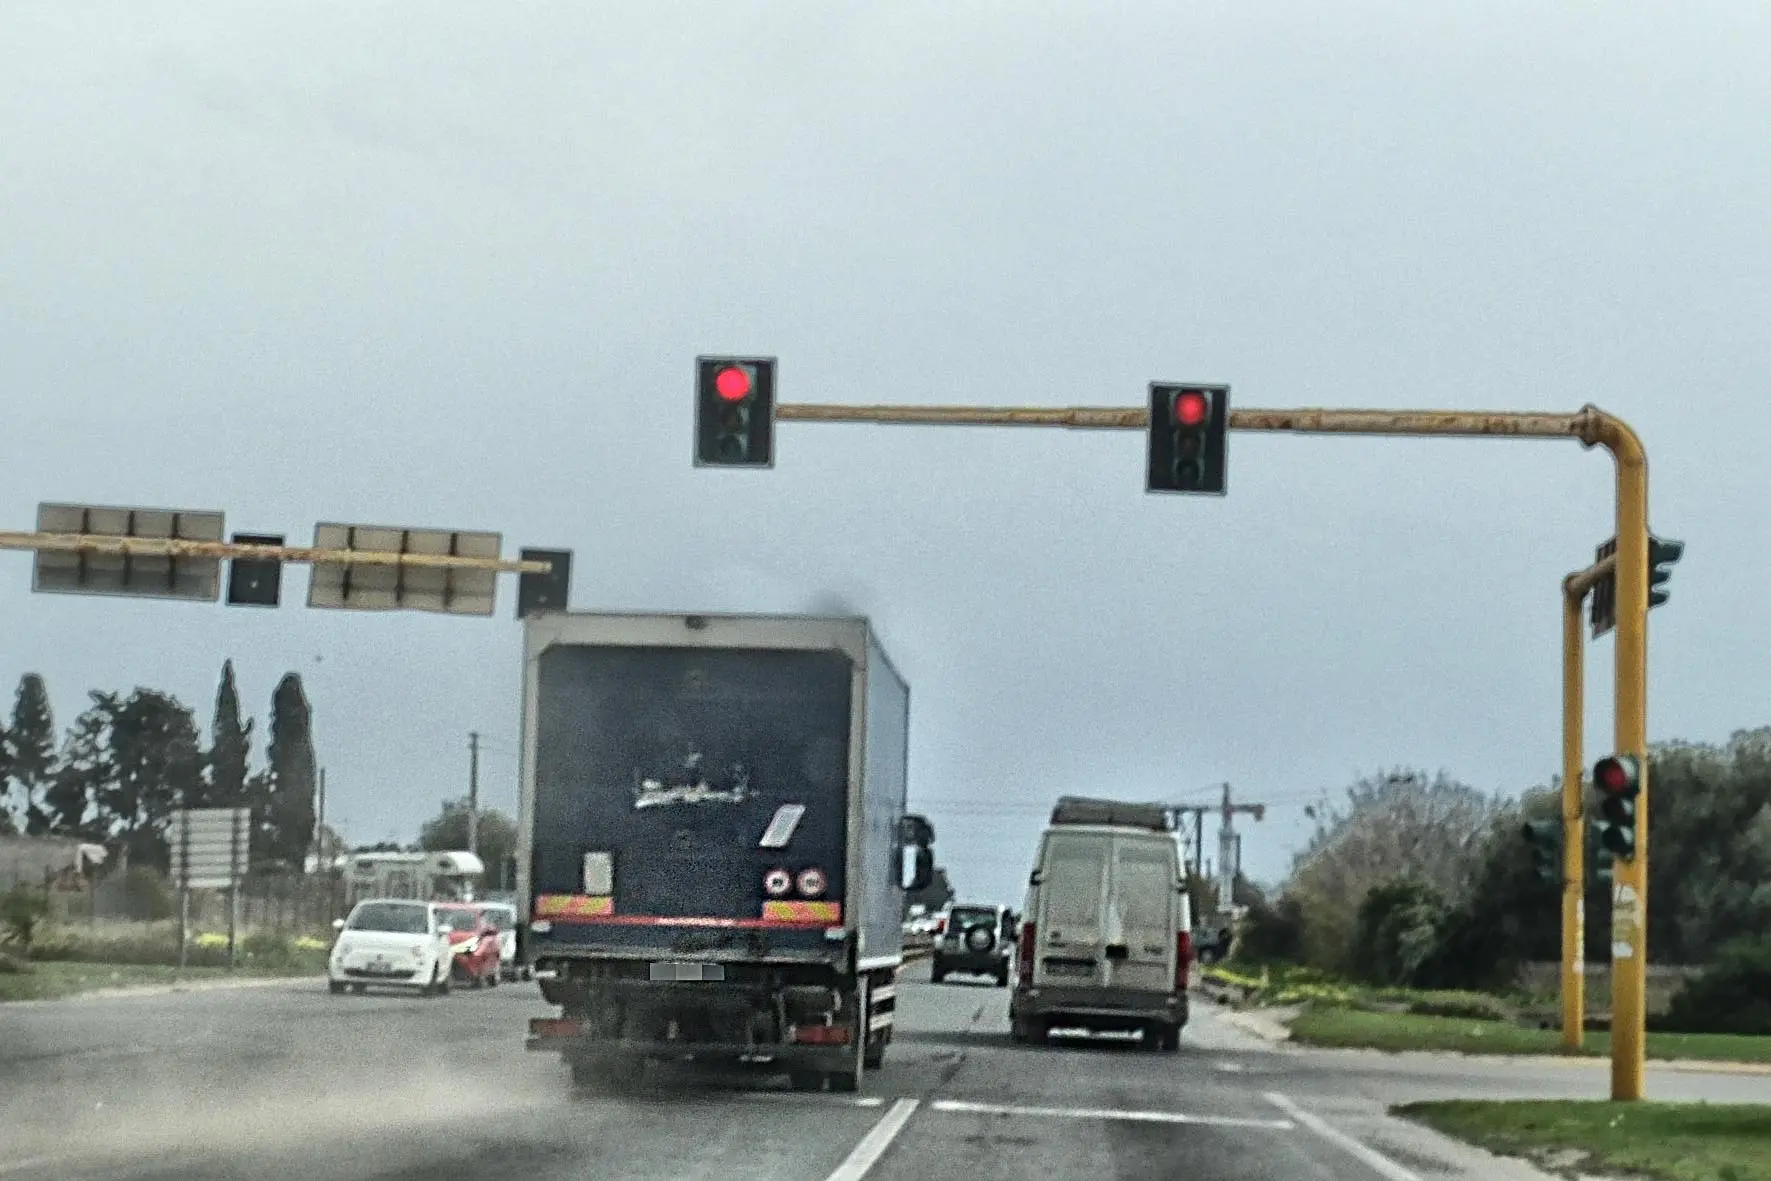 Un camion passa col rosso sulla 554 (L'Unione Sarda)